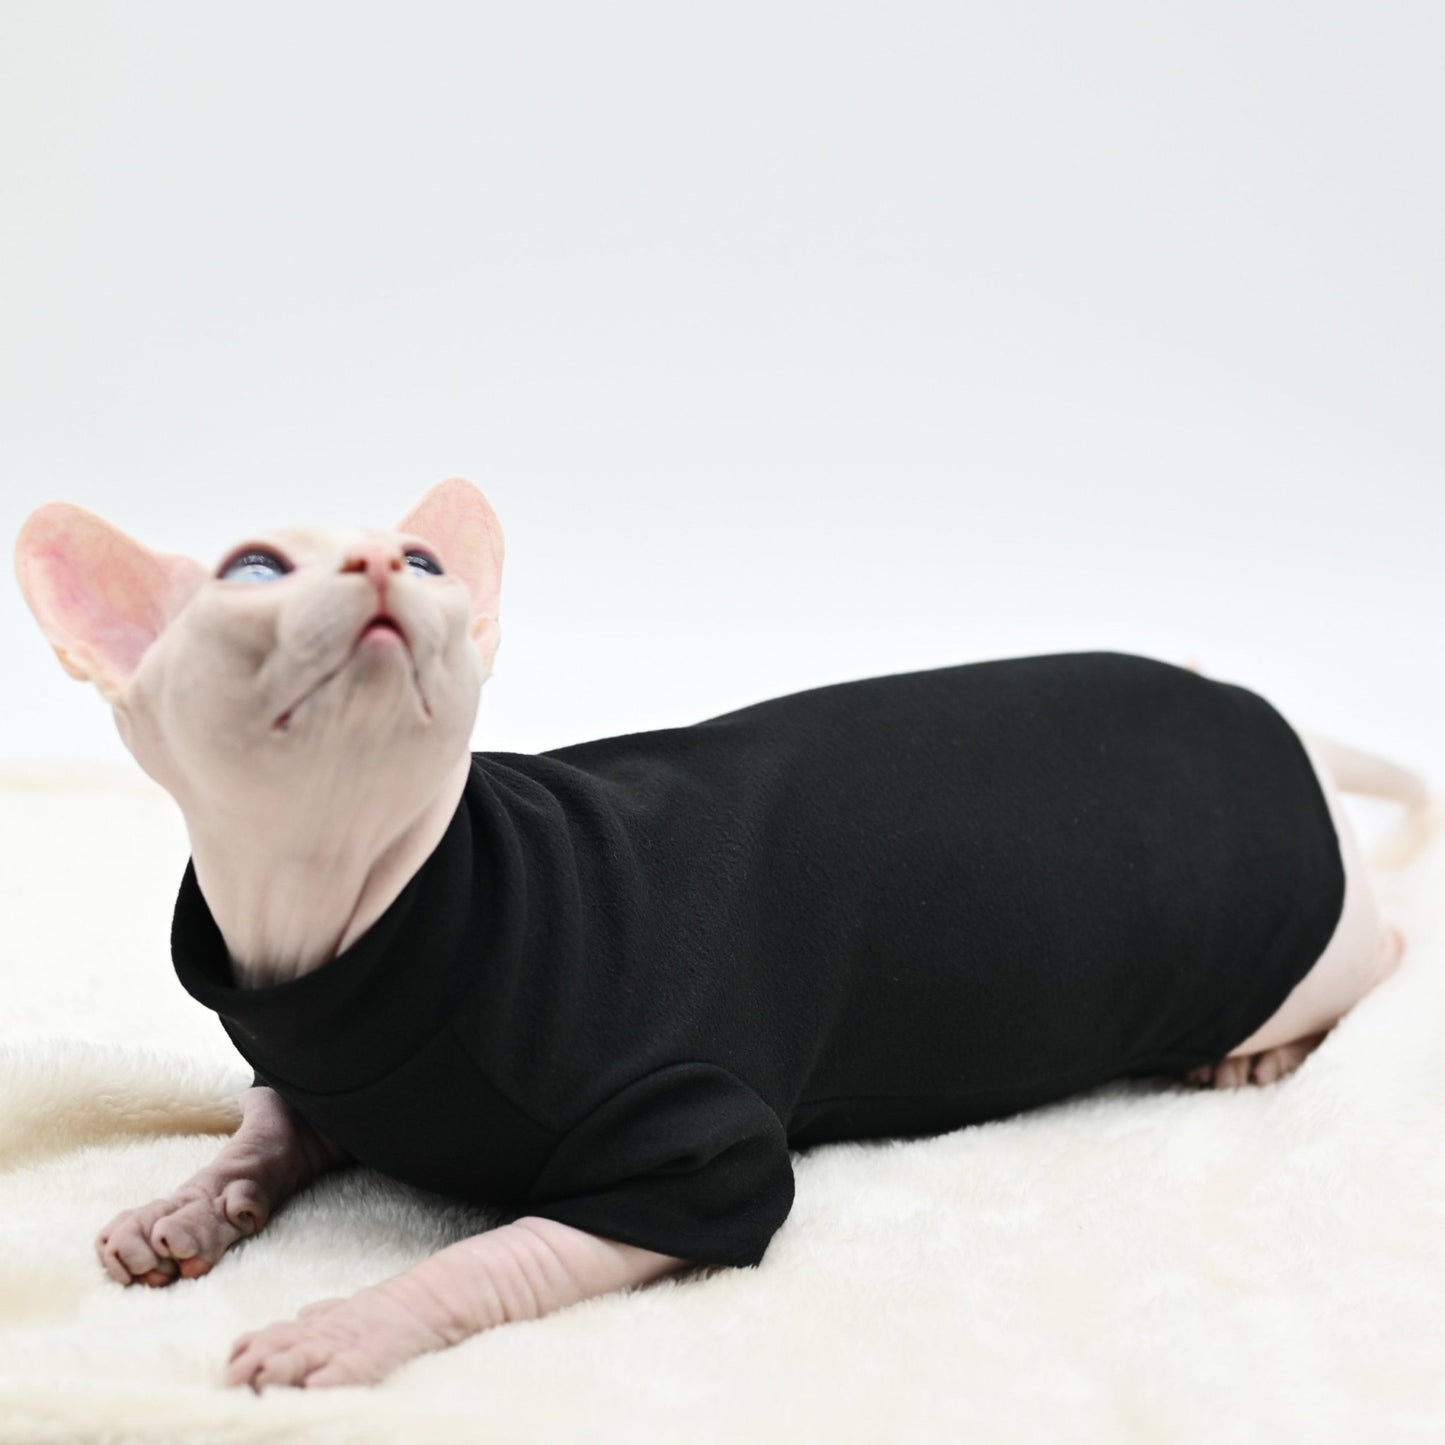 a black color cat clothes for cats